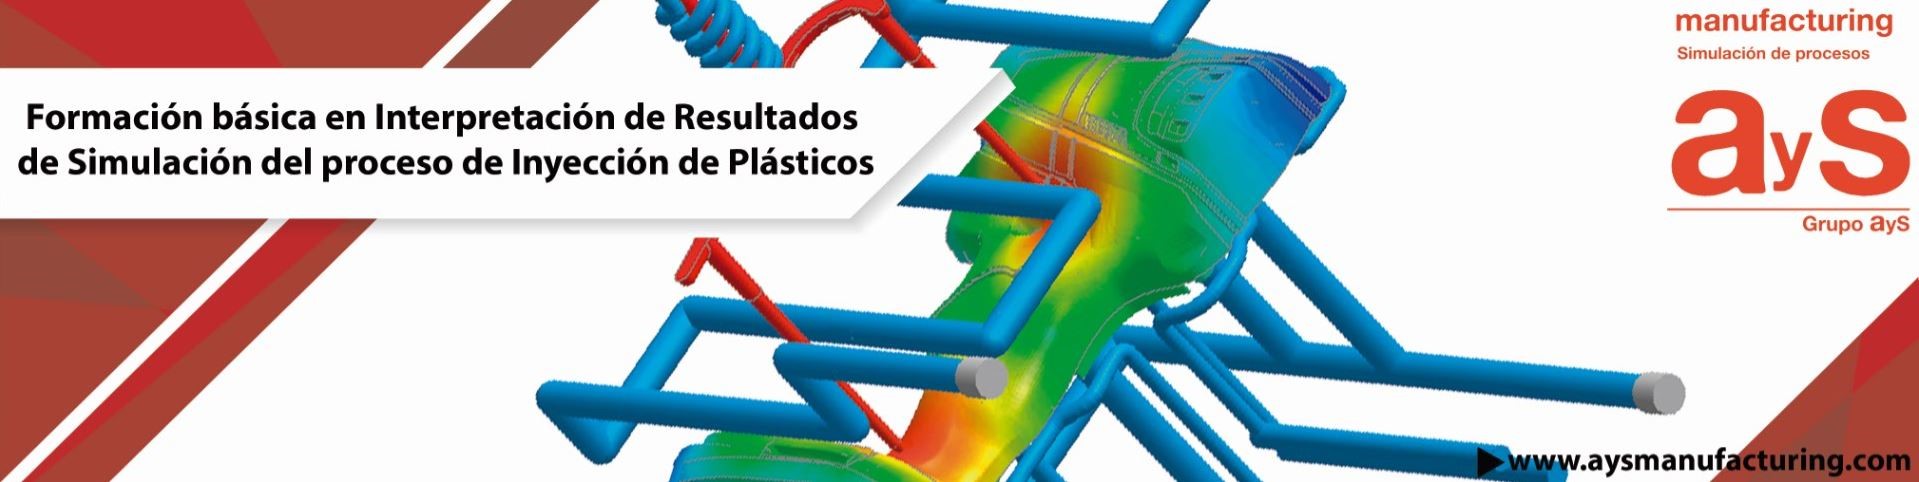 Formación básica en Interpretación de Resultados de Simulación del proceso de Inyección de Plásticos